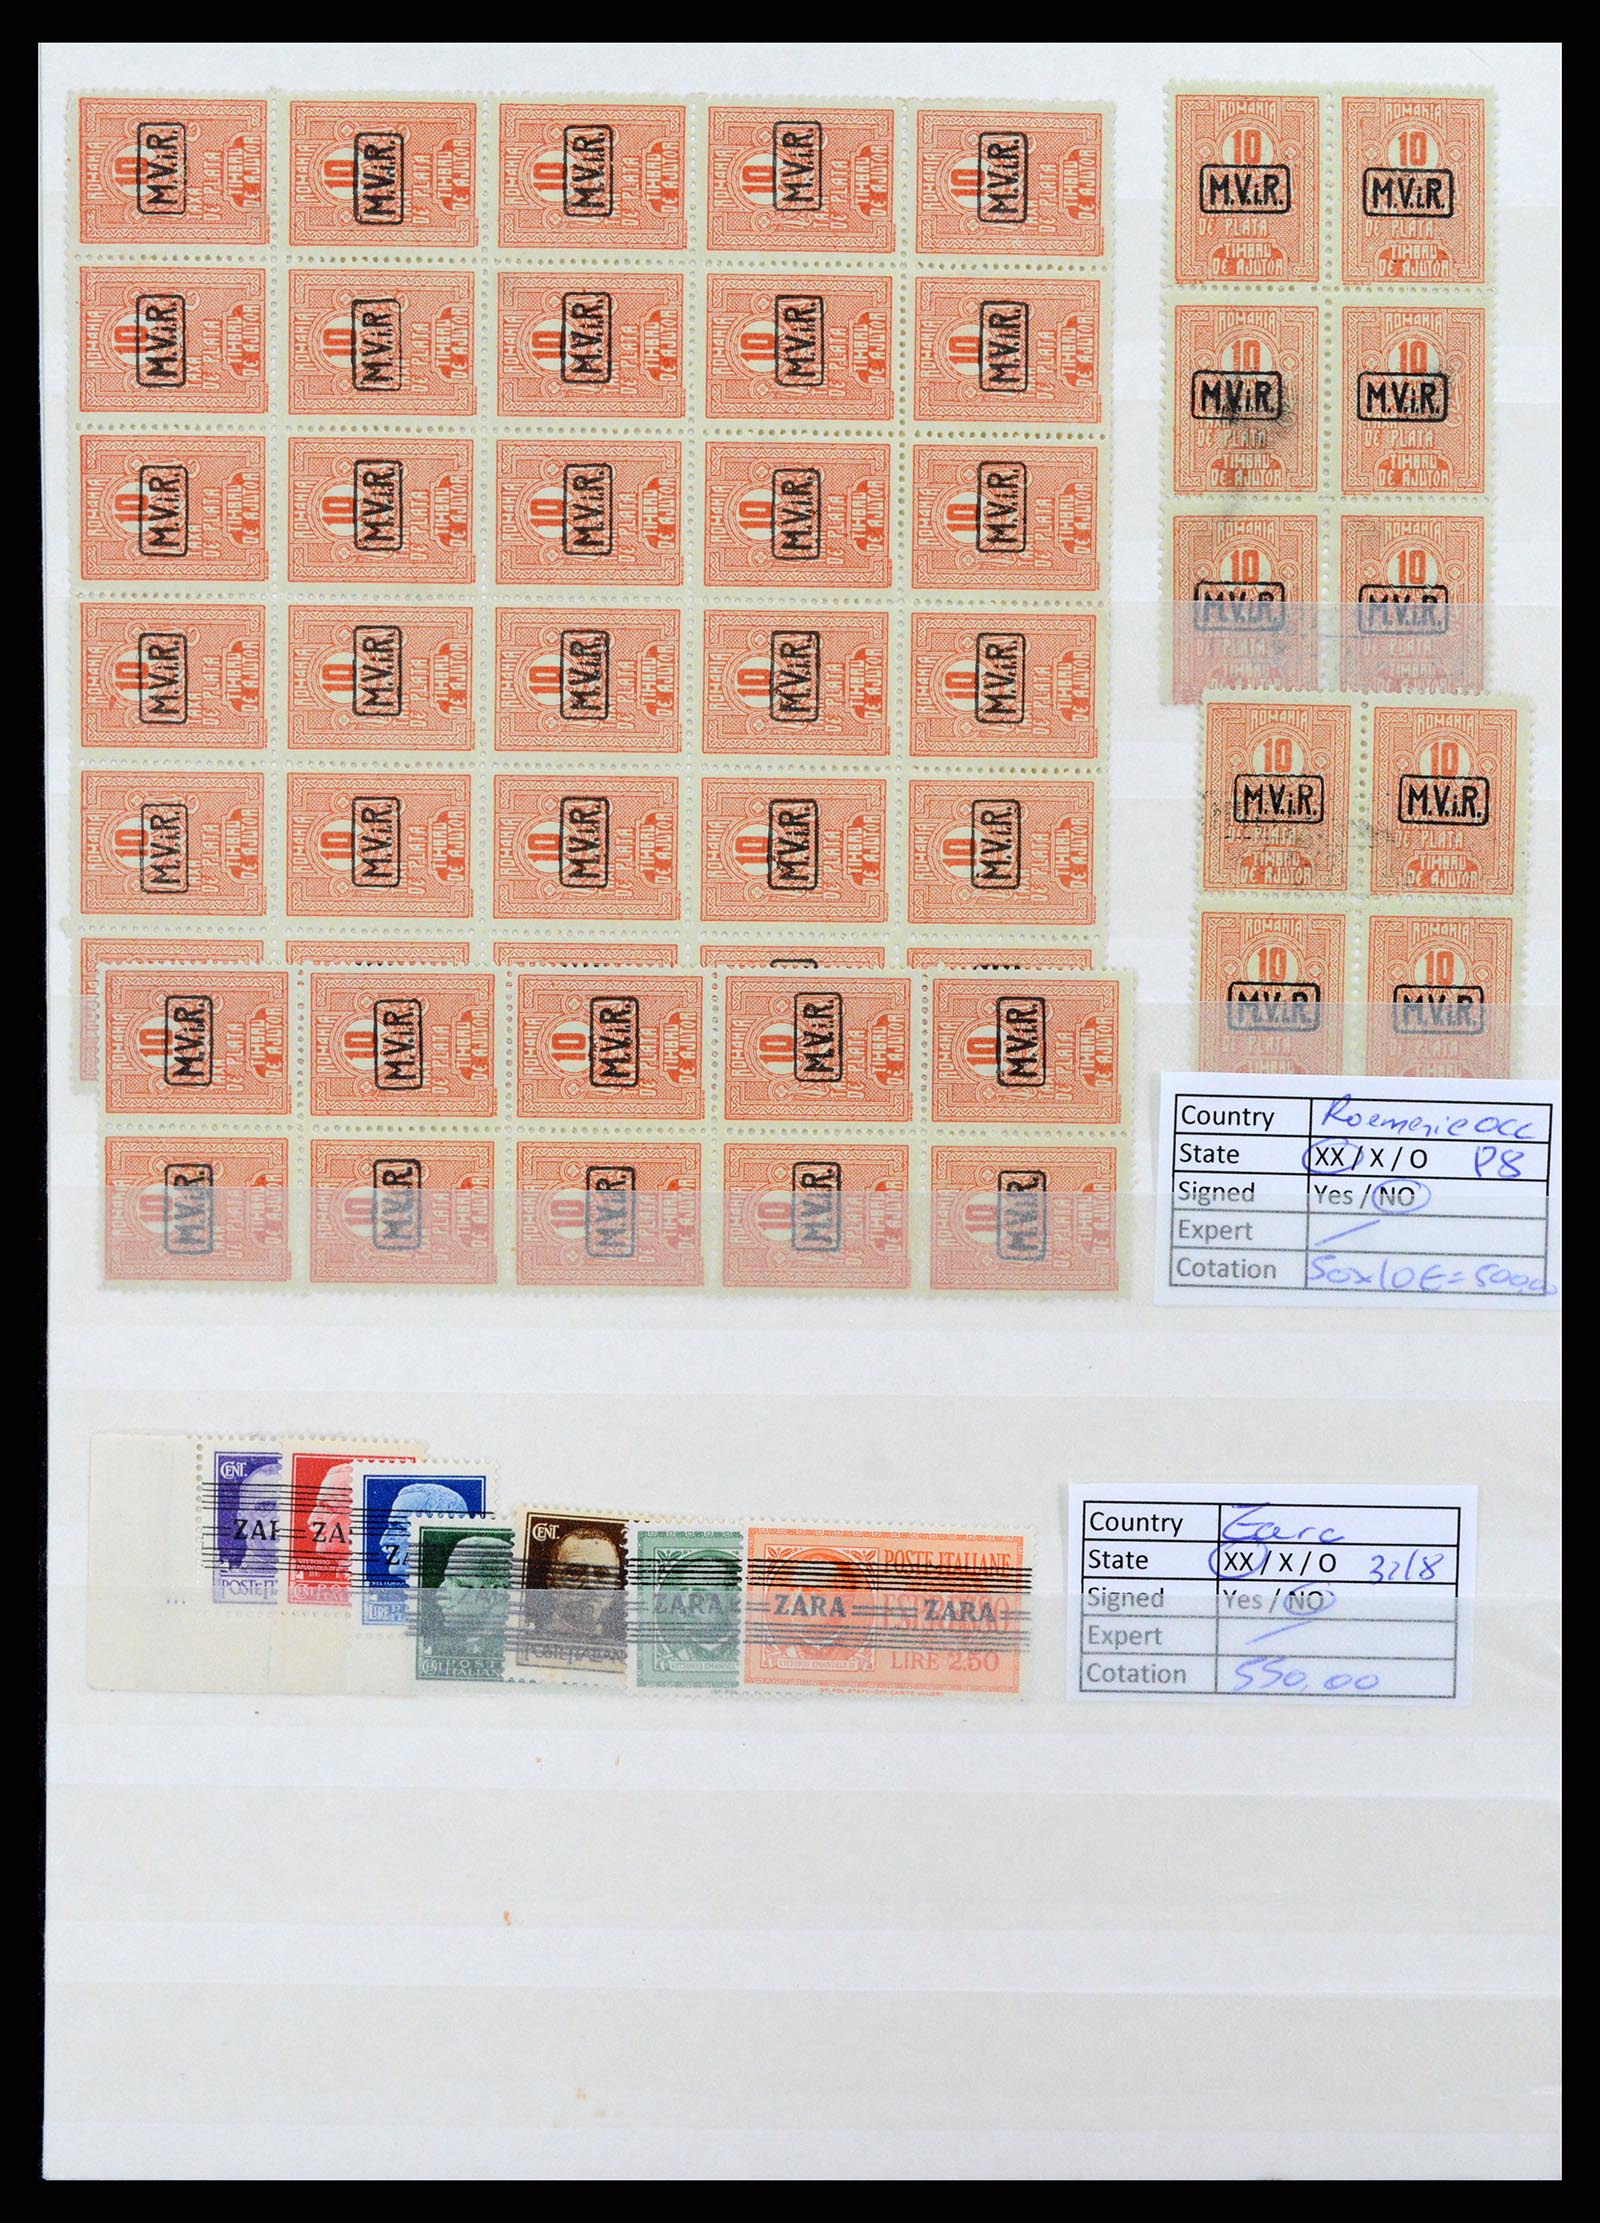 37690 010 - Stamp collection 37690 German occupation 2nd worldwar 1939-1945.